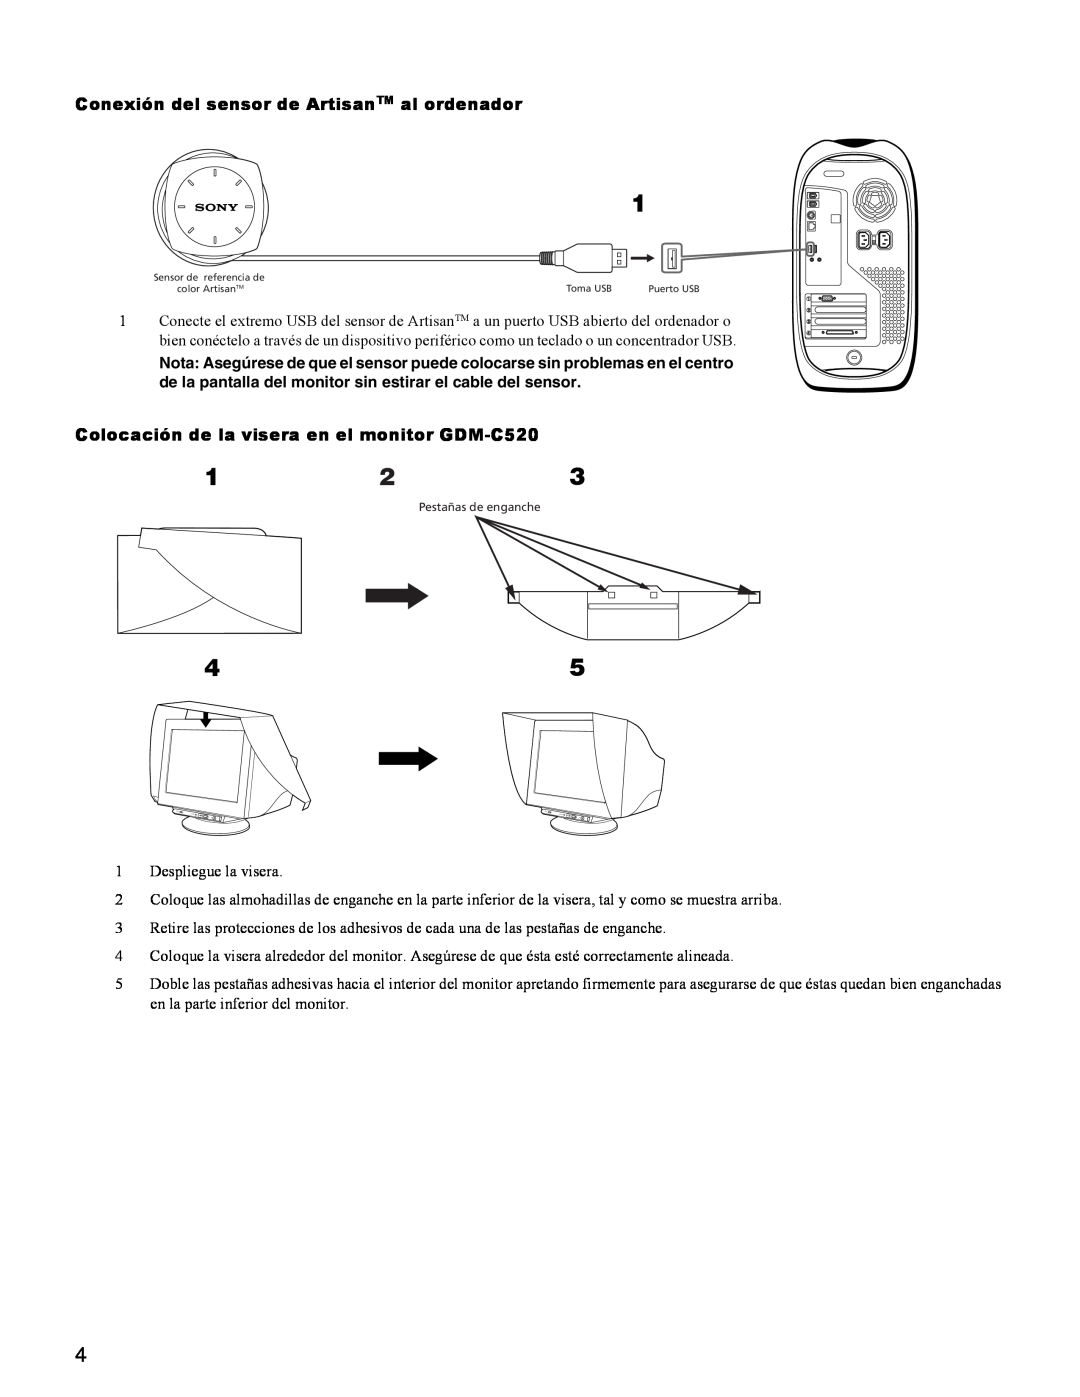 Sony GDM-C250K setup guide Conexión del sensor de ArtisanTM al ordenador, Colocación de la visera en el monitor GDM-C520 